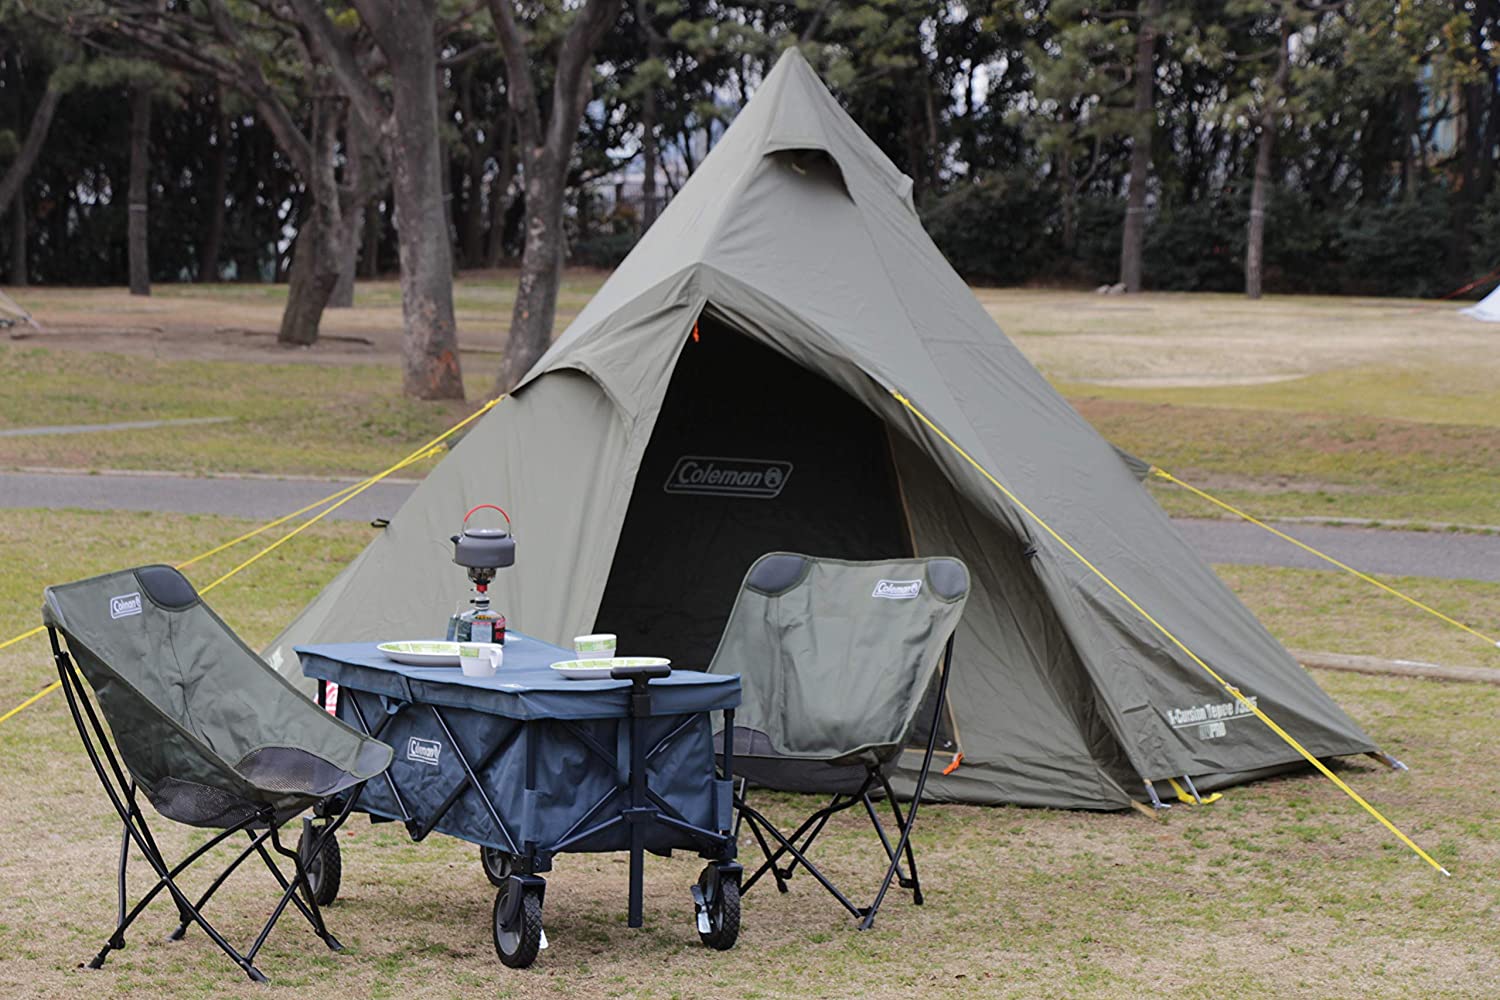 プライムデー Coleman コールマン のテント お買い得商品3選 Amazonランキングtop10 ソロキャンプやツーリングテントにぴったりのモデルも 22年7月12日 1 3 ねとらぼ調査隊